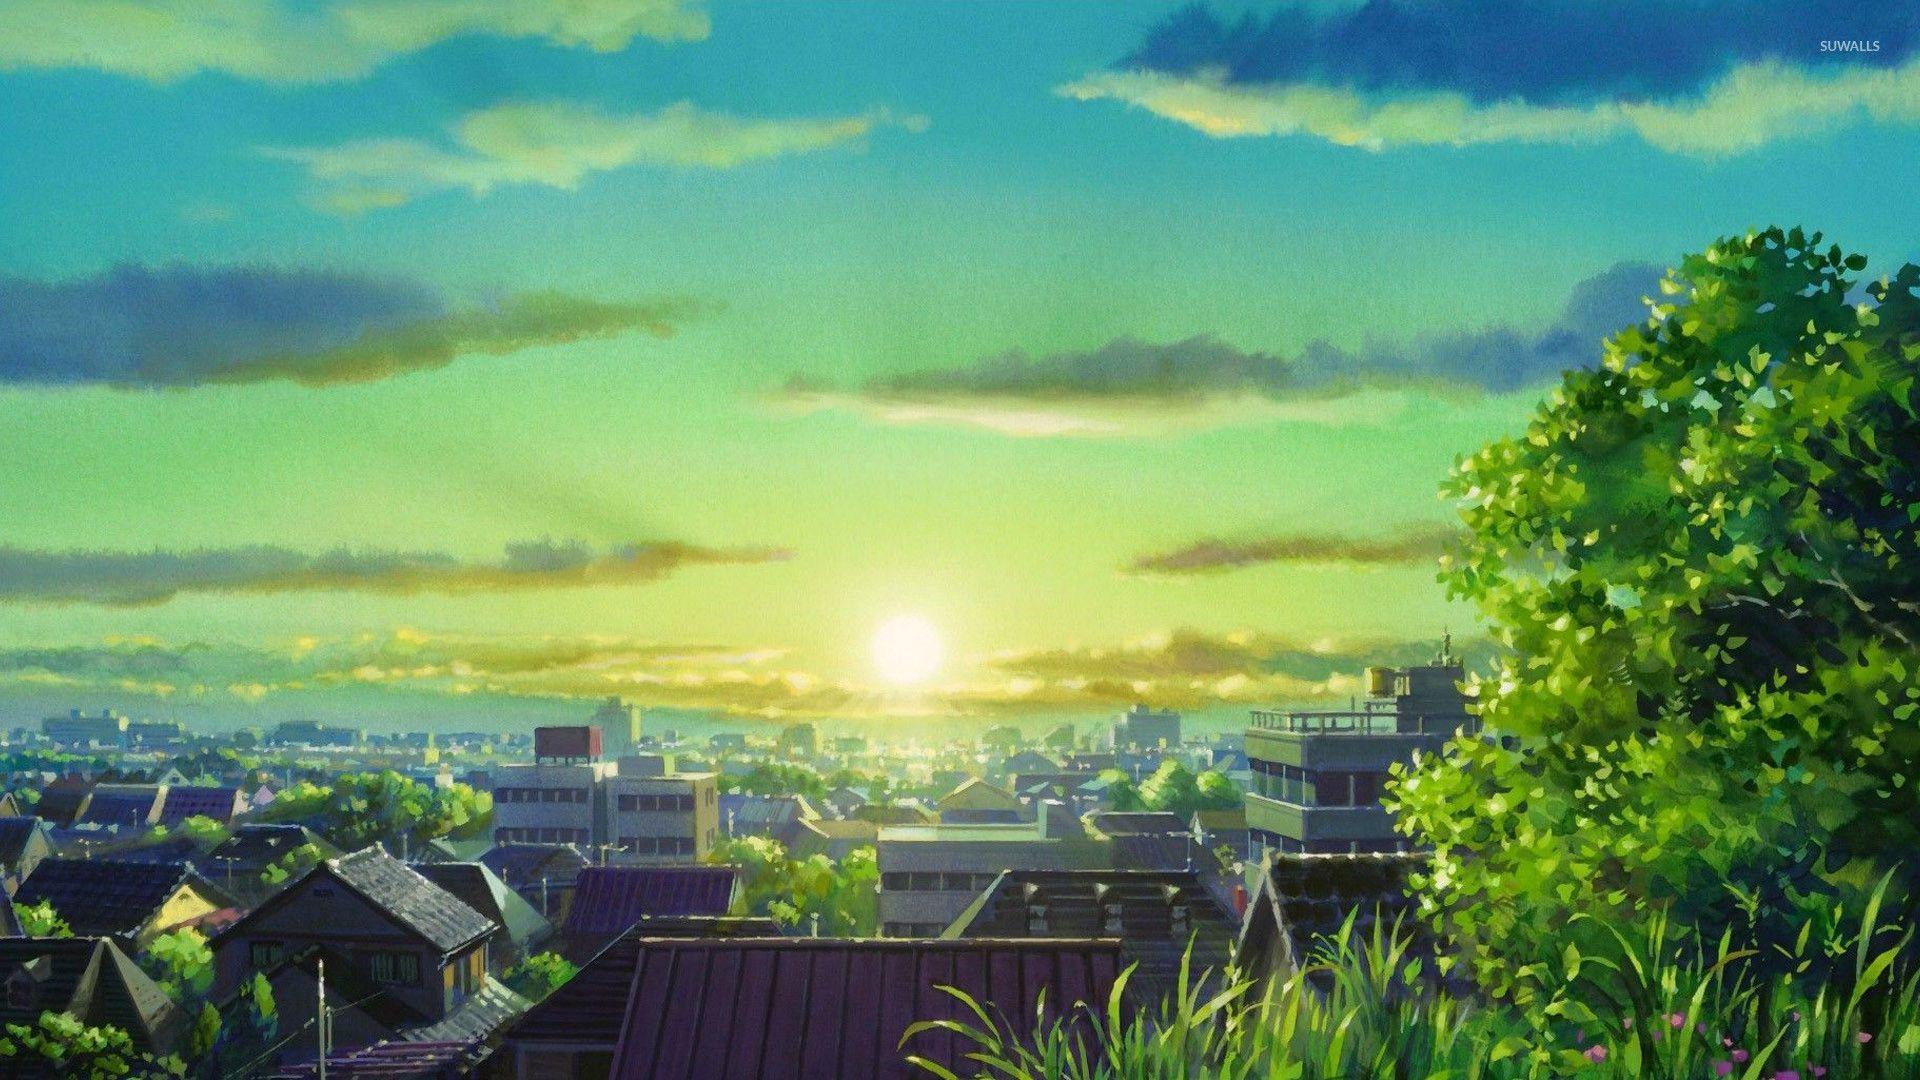 Hình nền anime chill: Cùng thư giãn và tìm hiểu với những bức hình nền anime chill đẹp lung linh. Hình ảnh đầy sắc màu và cổ điển sẽ khiến bạn không thể rời mắt. Hãy cùng khám phá những cảnh quan tuyệt đẹp trong thế giới anime và dành thời gian bình yên nhất trong ngày với hình nền anime chill.